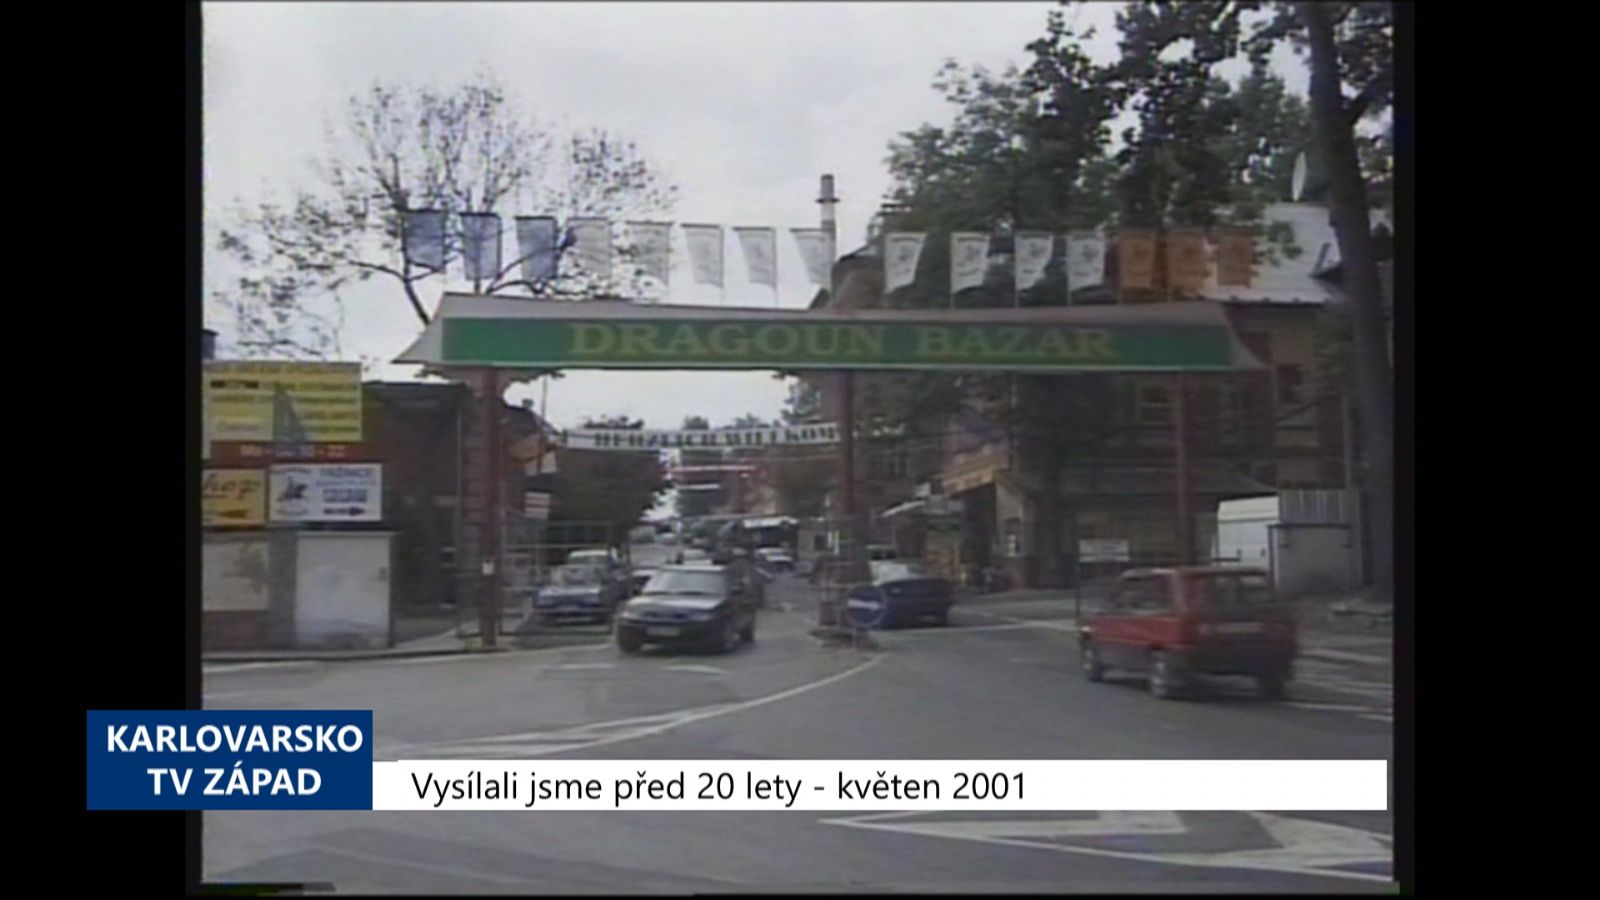 2001 – Cheb: Spor ohledně pronájmu Dragounu pokračuje (TV Západ)